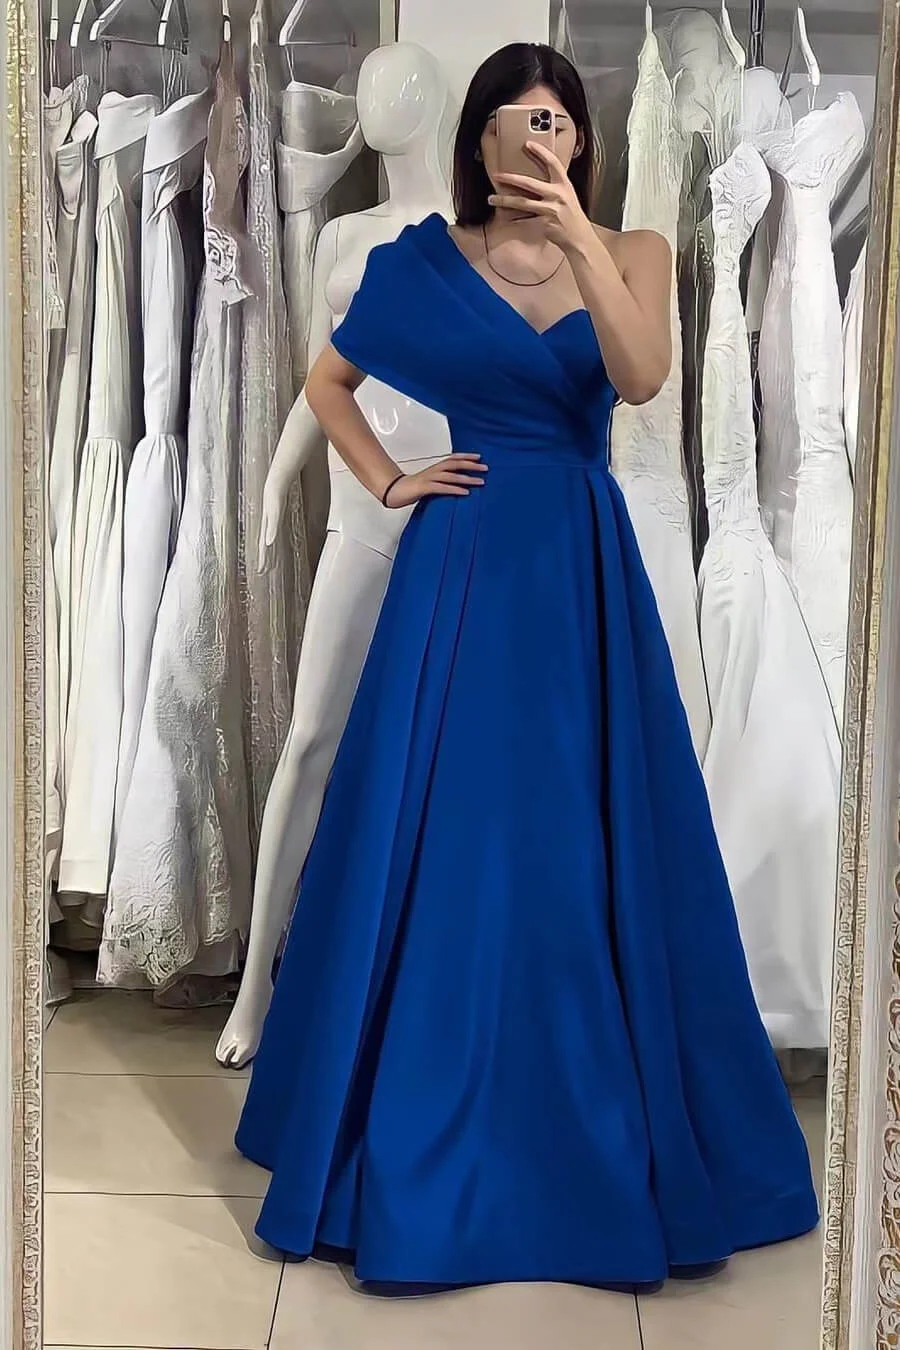 Daisda Elegant One Shoulder Sweetheart Evening Dress With Off-The-Shoulder Online Royal Blue